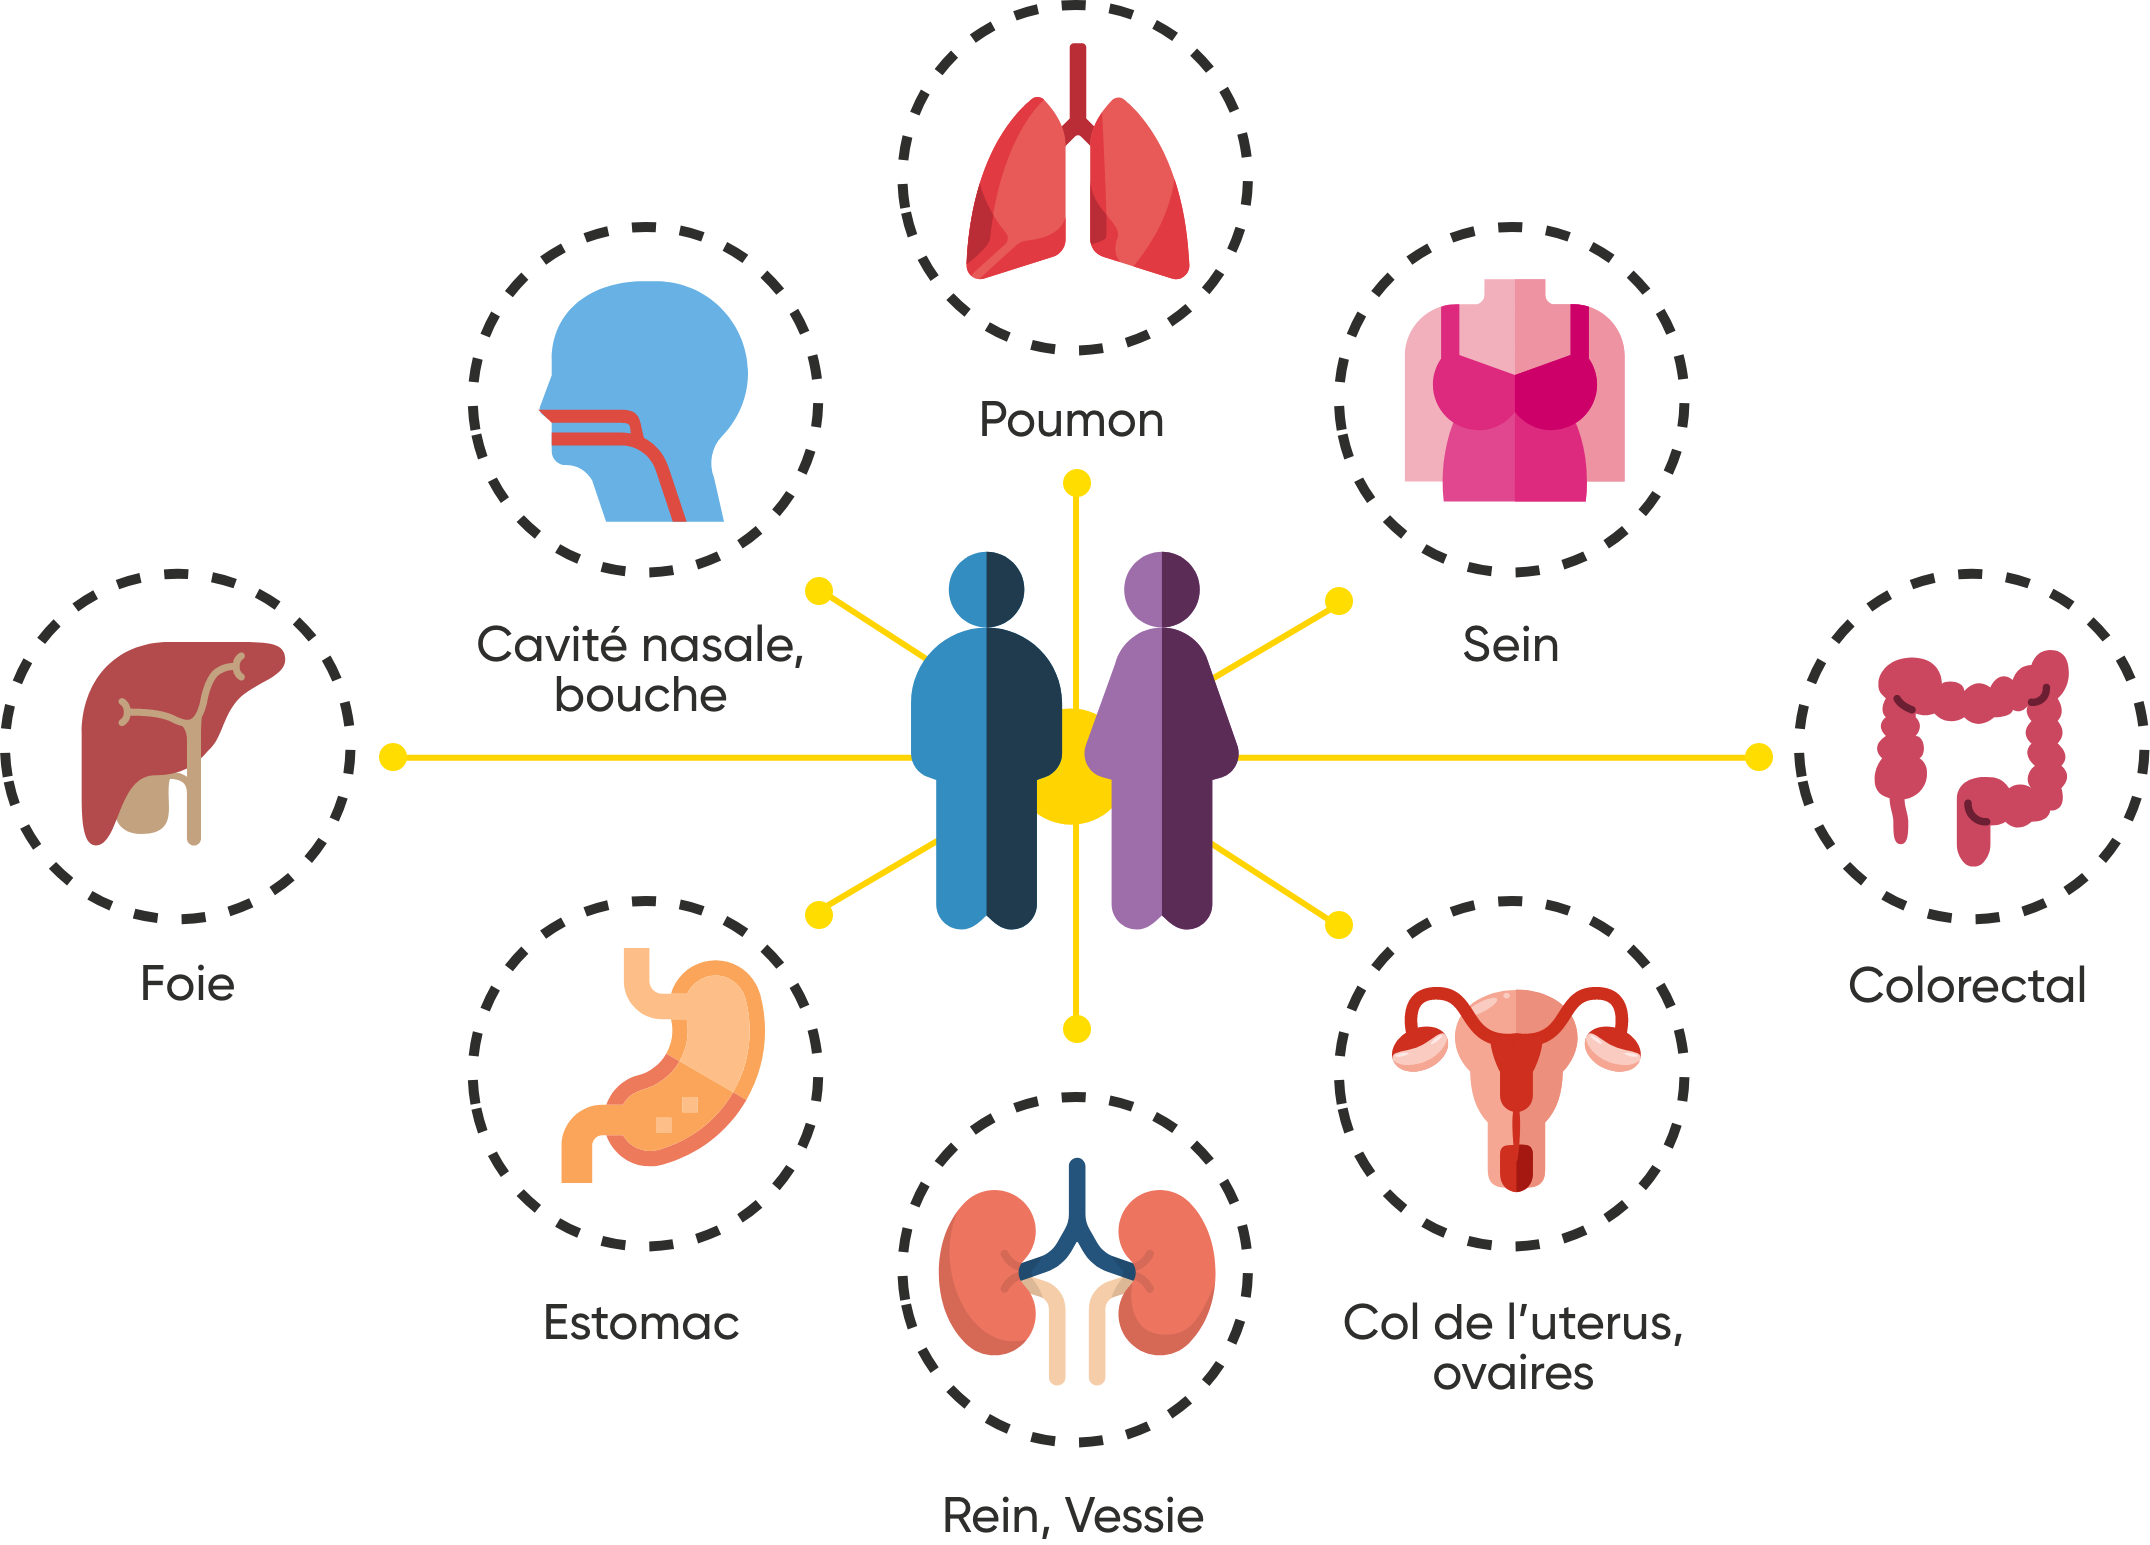 Schéma montrant la localisation des cancers favorisés par le tabac: poumon, sein, colorectal, col de l'uterus, ovaires, rein, vessie, estomac, foie, cavité nasale, bouche